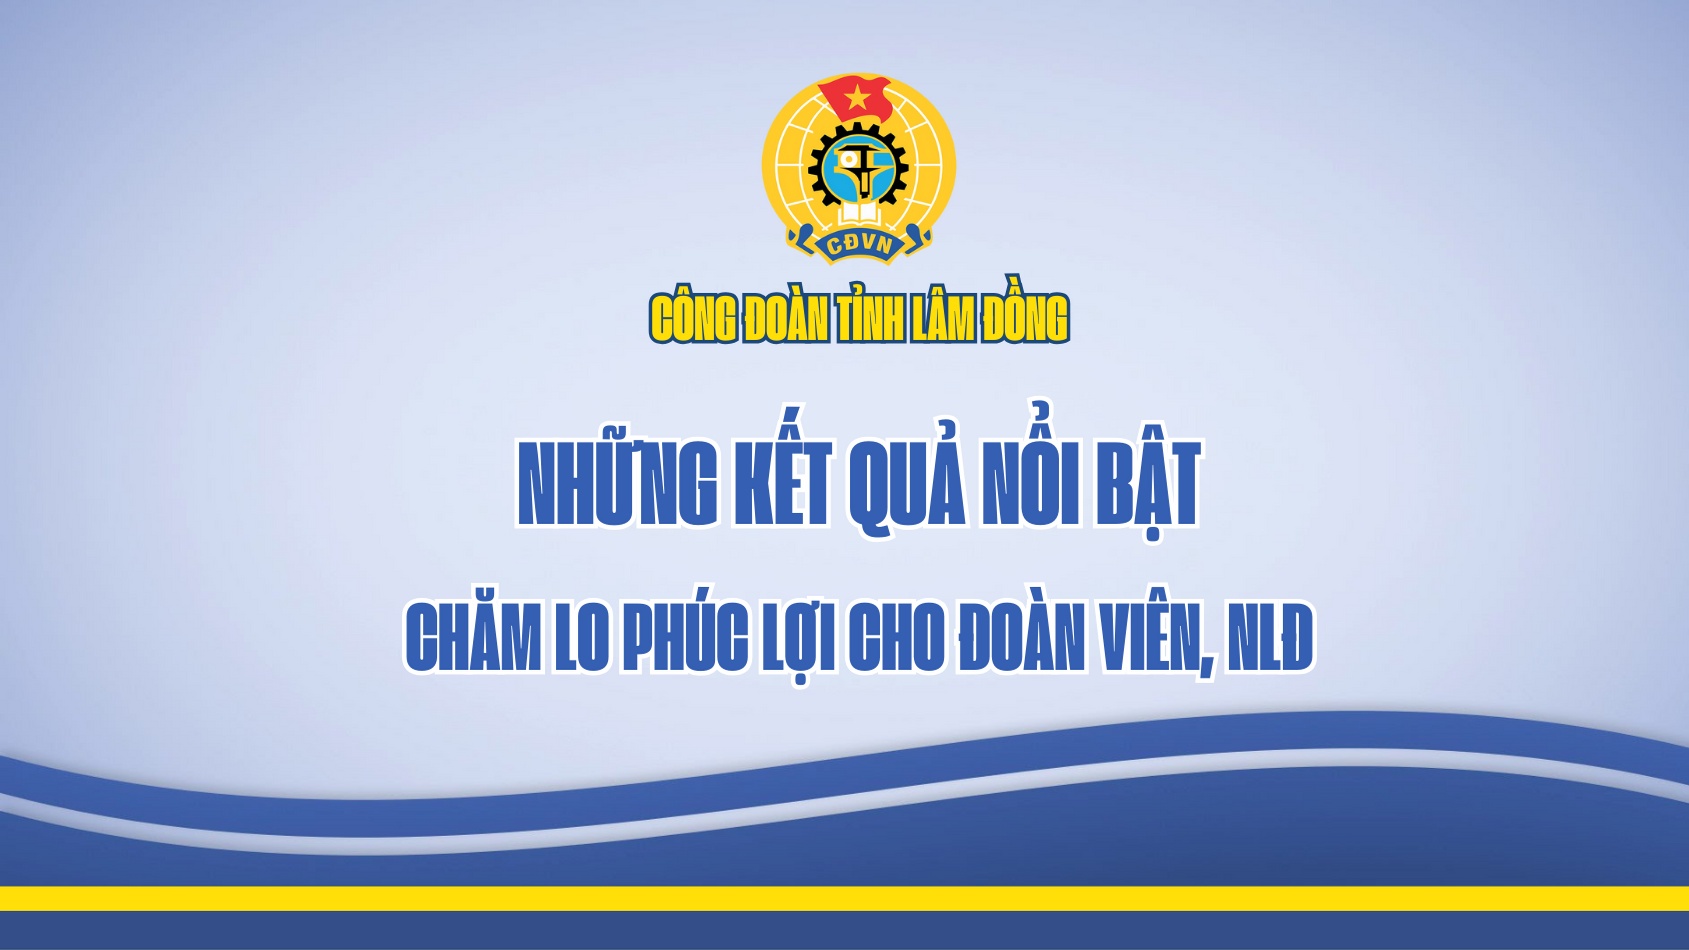 Kết quả nổi bật về chăm lo phúc lợi của Công đoàn tỉnh Lâm Đồng